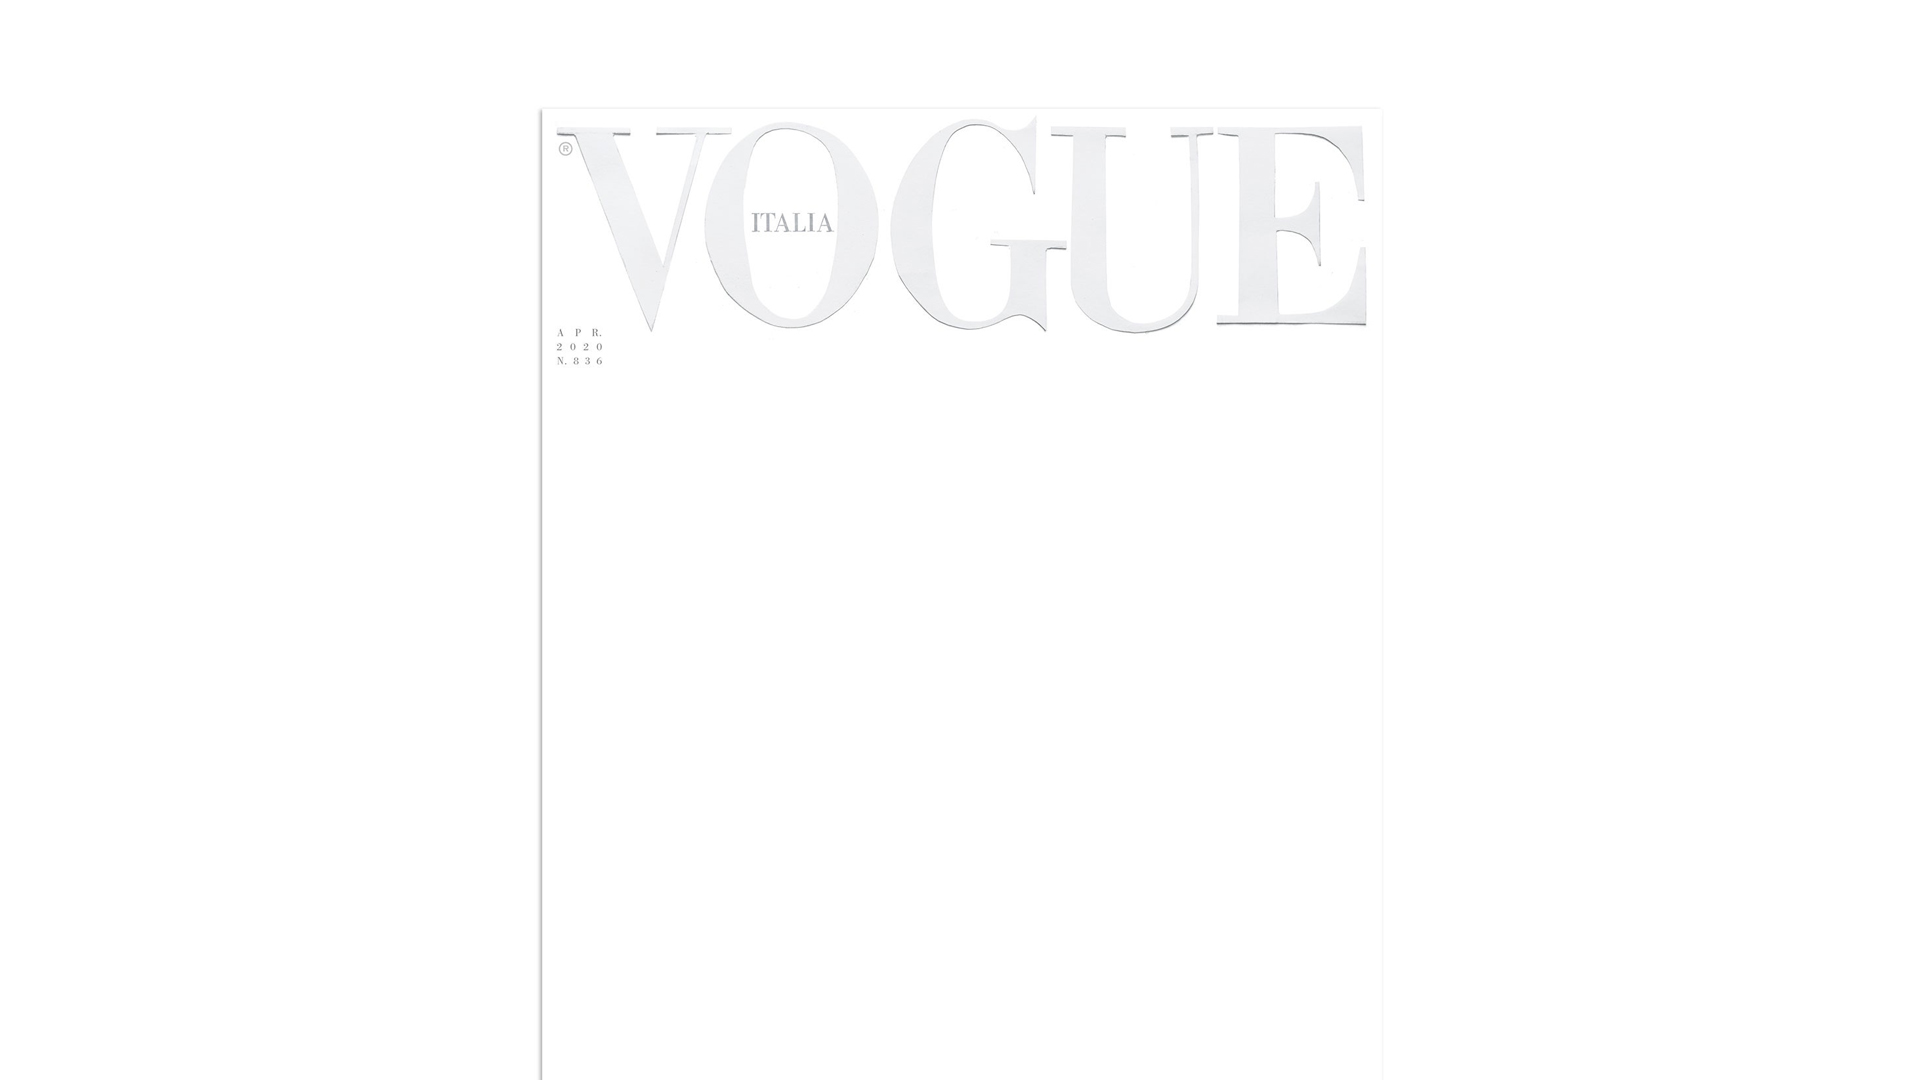 Copertina bianca Vogue Italia: è ora di riaccendere l’immaginazione